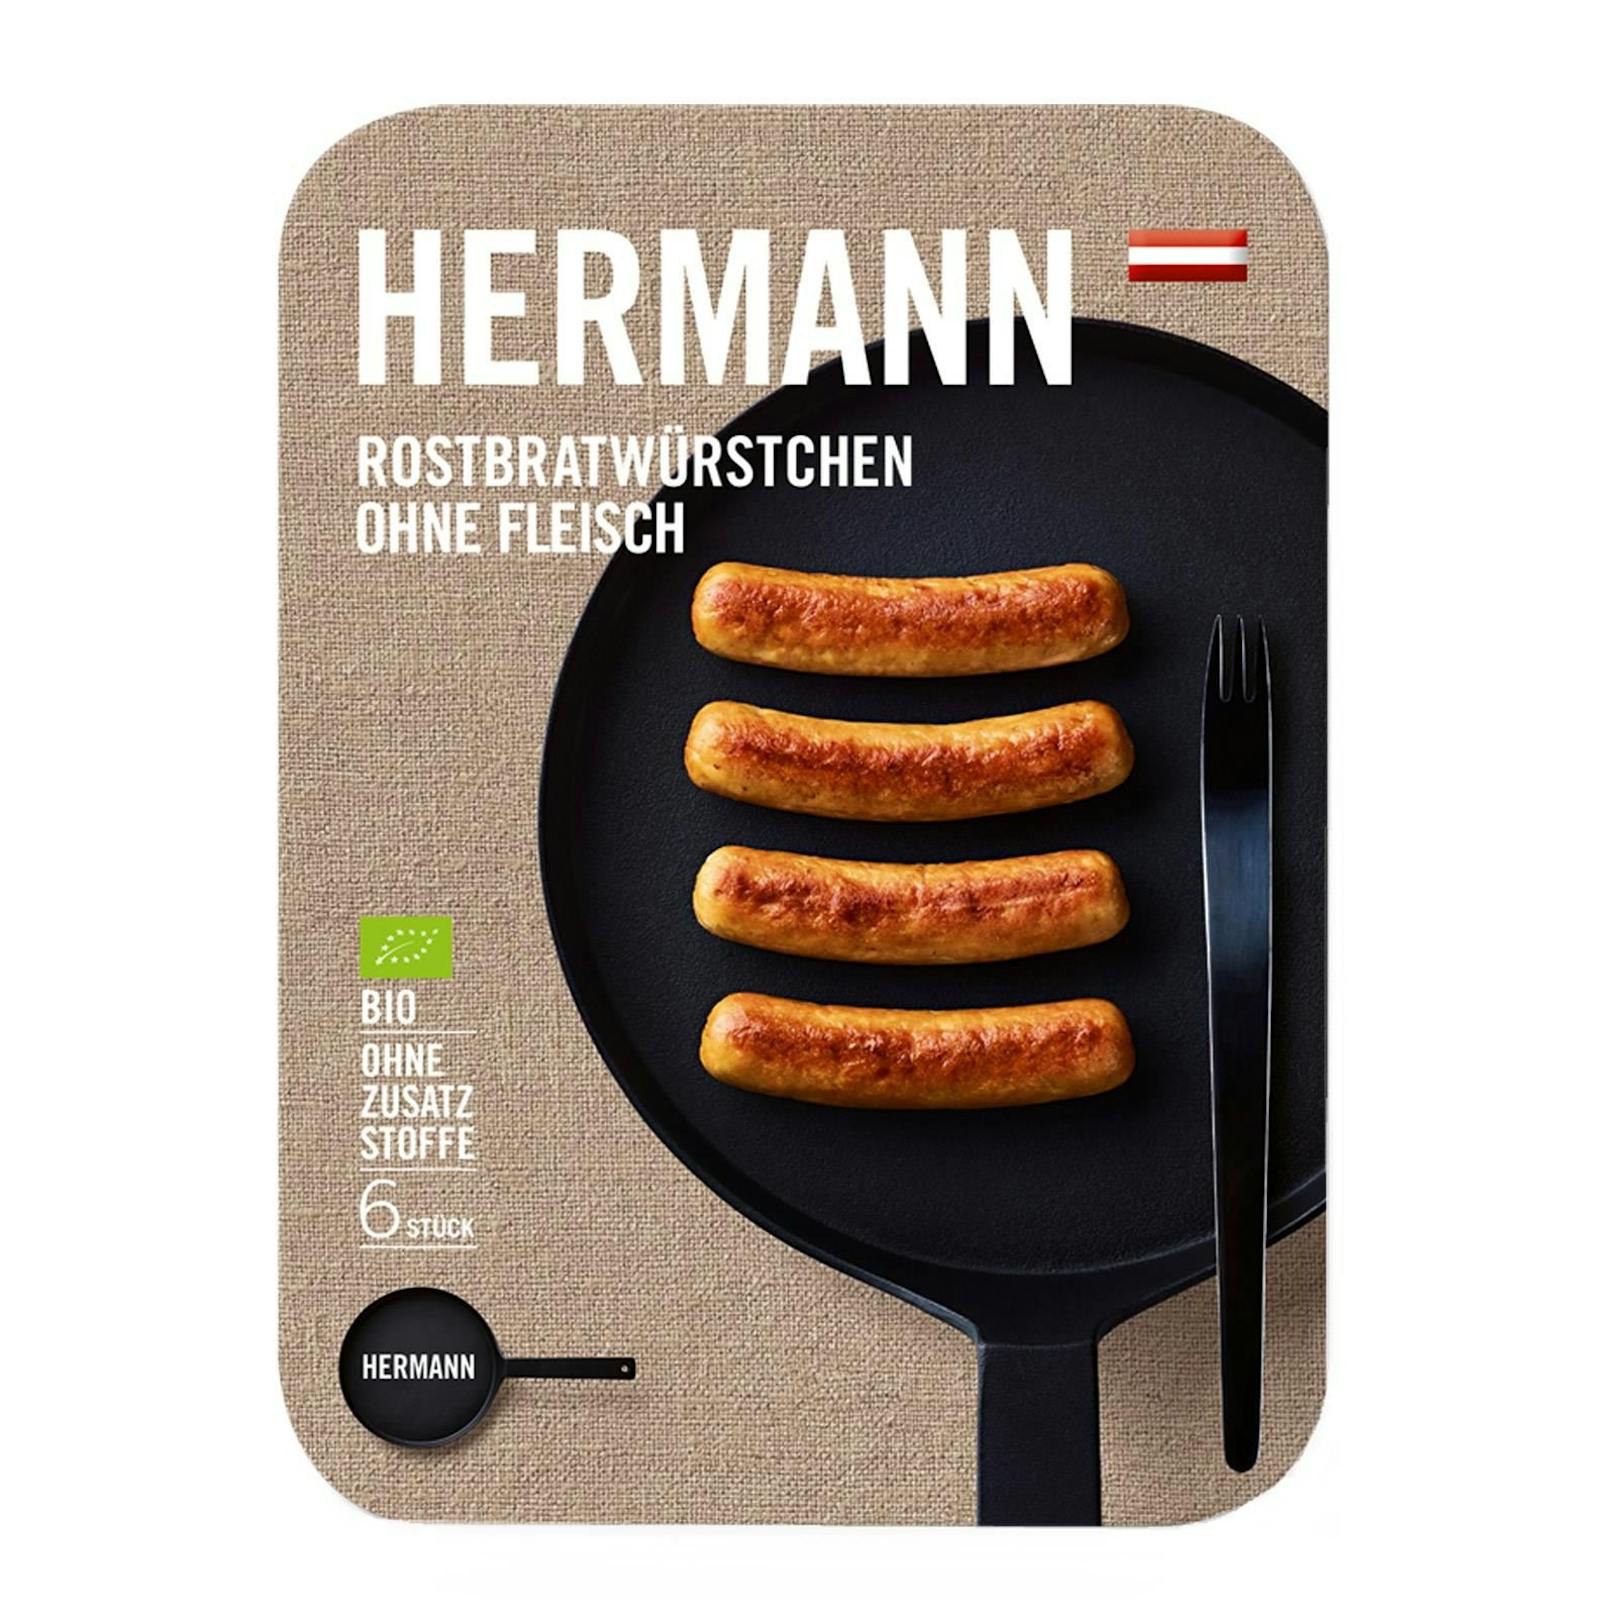 In "Herrmann Rostbratwürstchen ohne Fleisch, vegetarisch" fand "Öko-Test" besonders viele Mineralölrückstände.